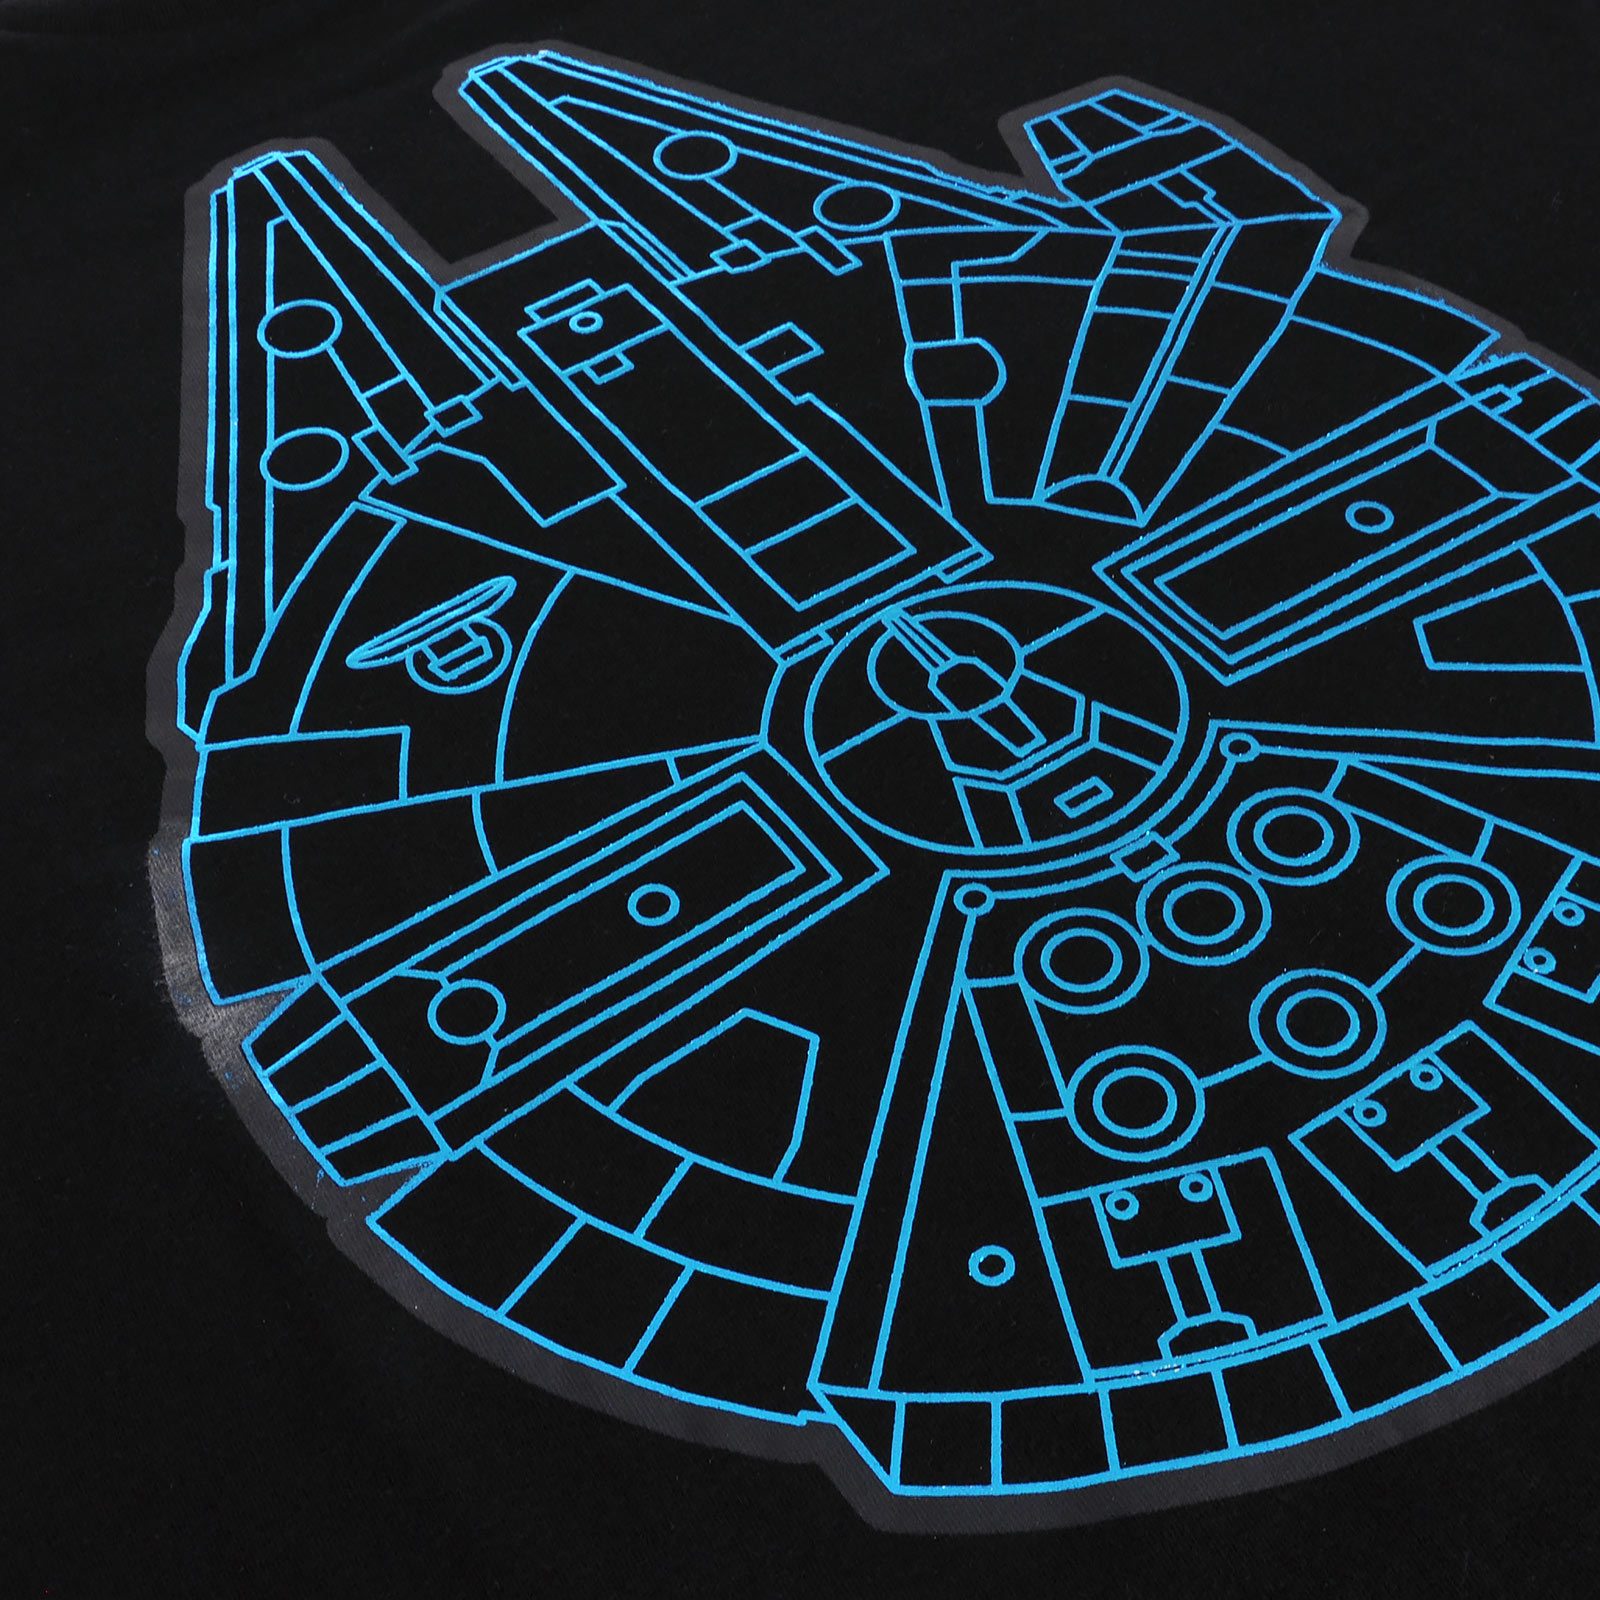 Star Wars - Millennium Falcon T-Shirt schwarz